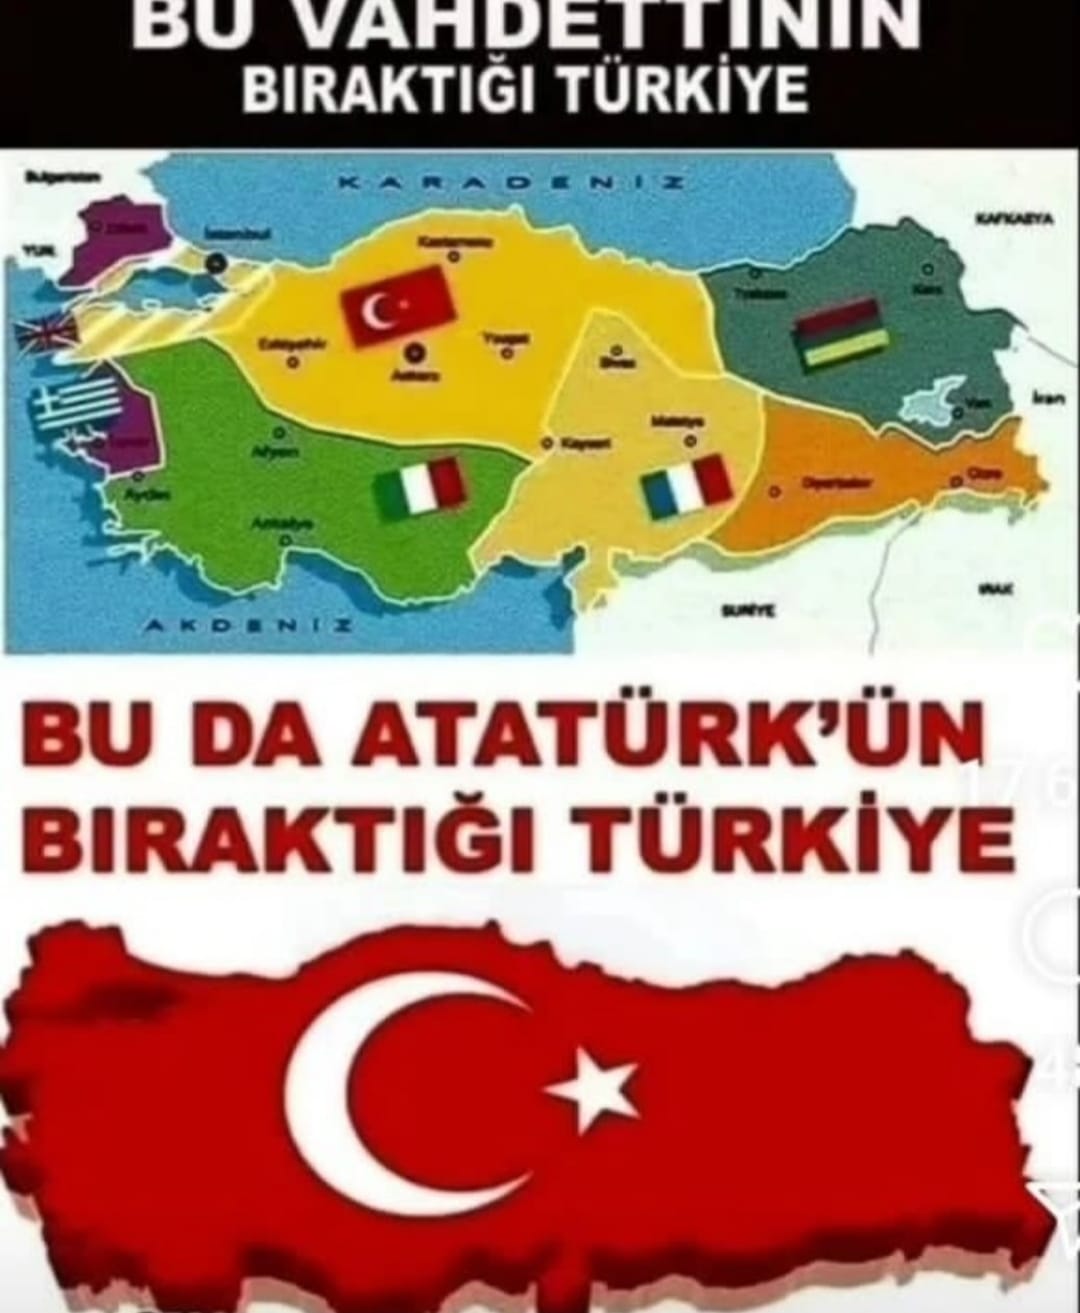 Vahdettin'in bıraktığı Türkiye - Atatürkün bıraktığı Türkiye - Vahdettin ve Ataturkun biraktigi Turkiye